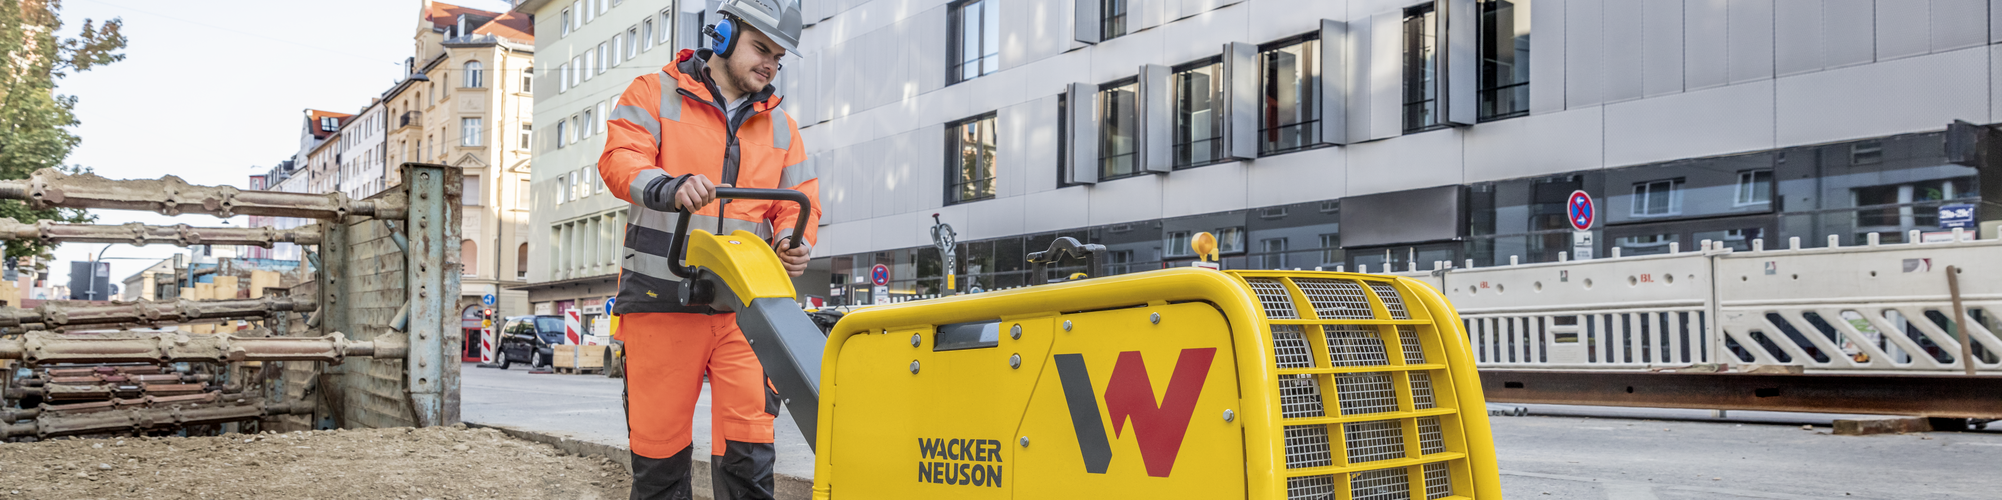 Placa vibradora Wacker Neuson em ação em um canteiro de obras na cidade.